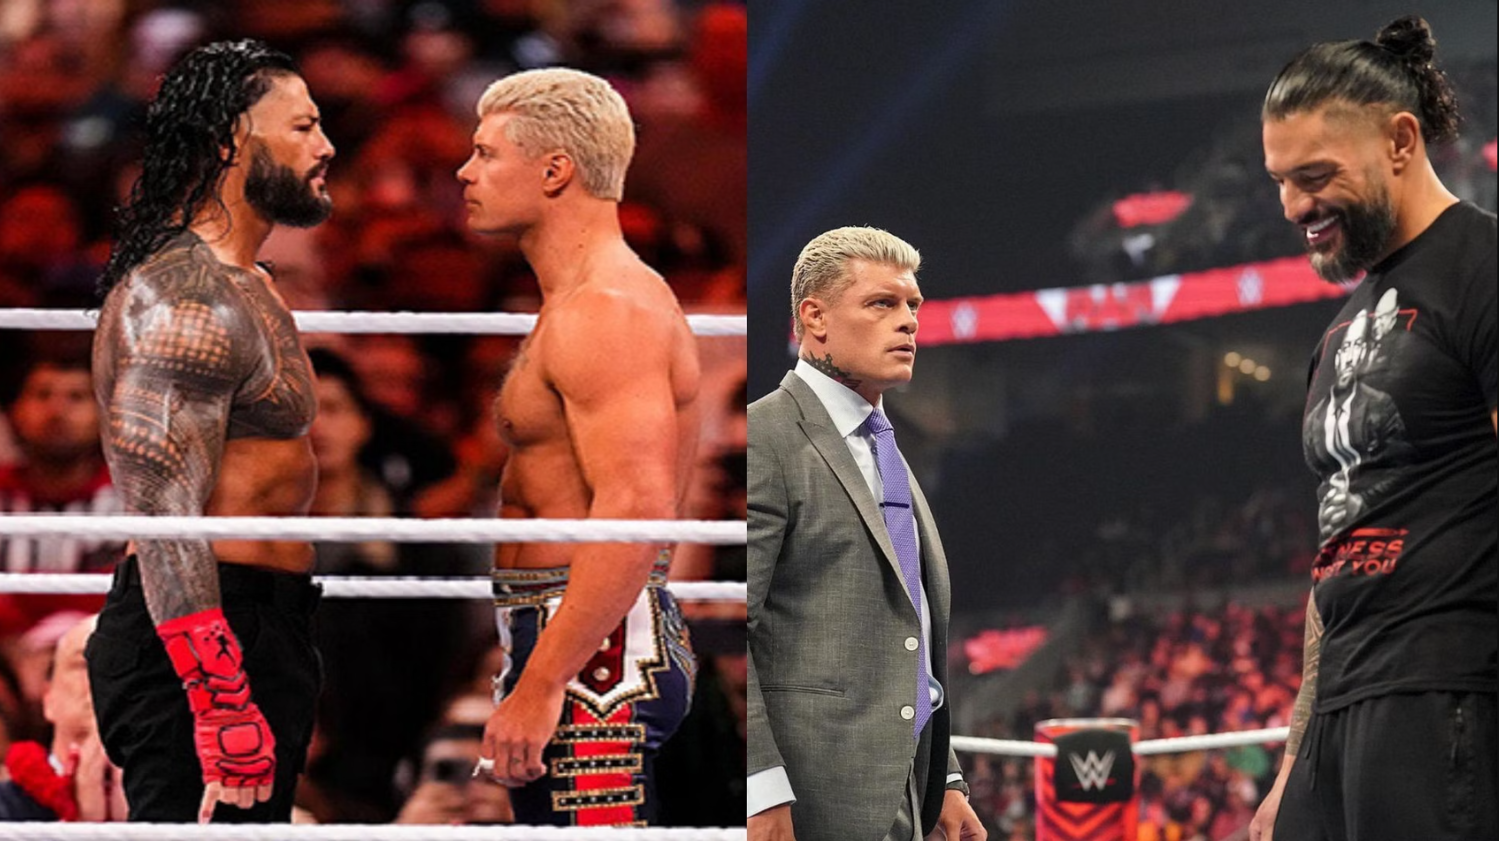 Коди Роудс появится на том же шоу, что и Роман Рейнс, и встретится с бывшим чемпионом WWE